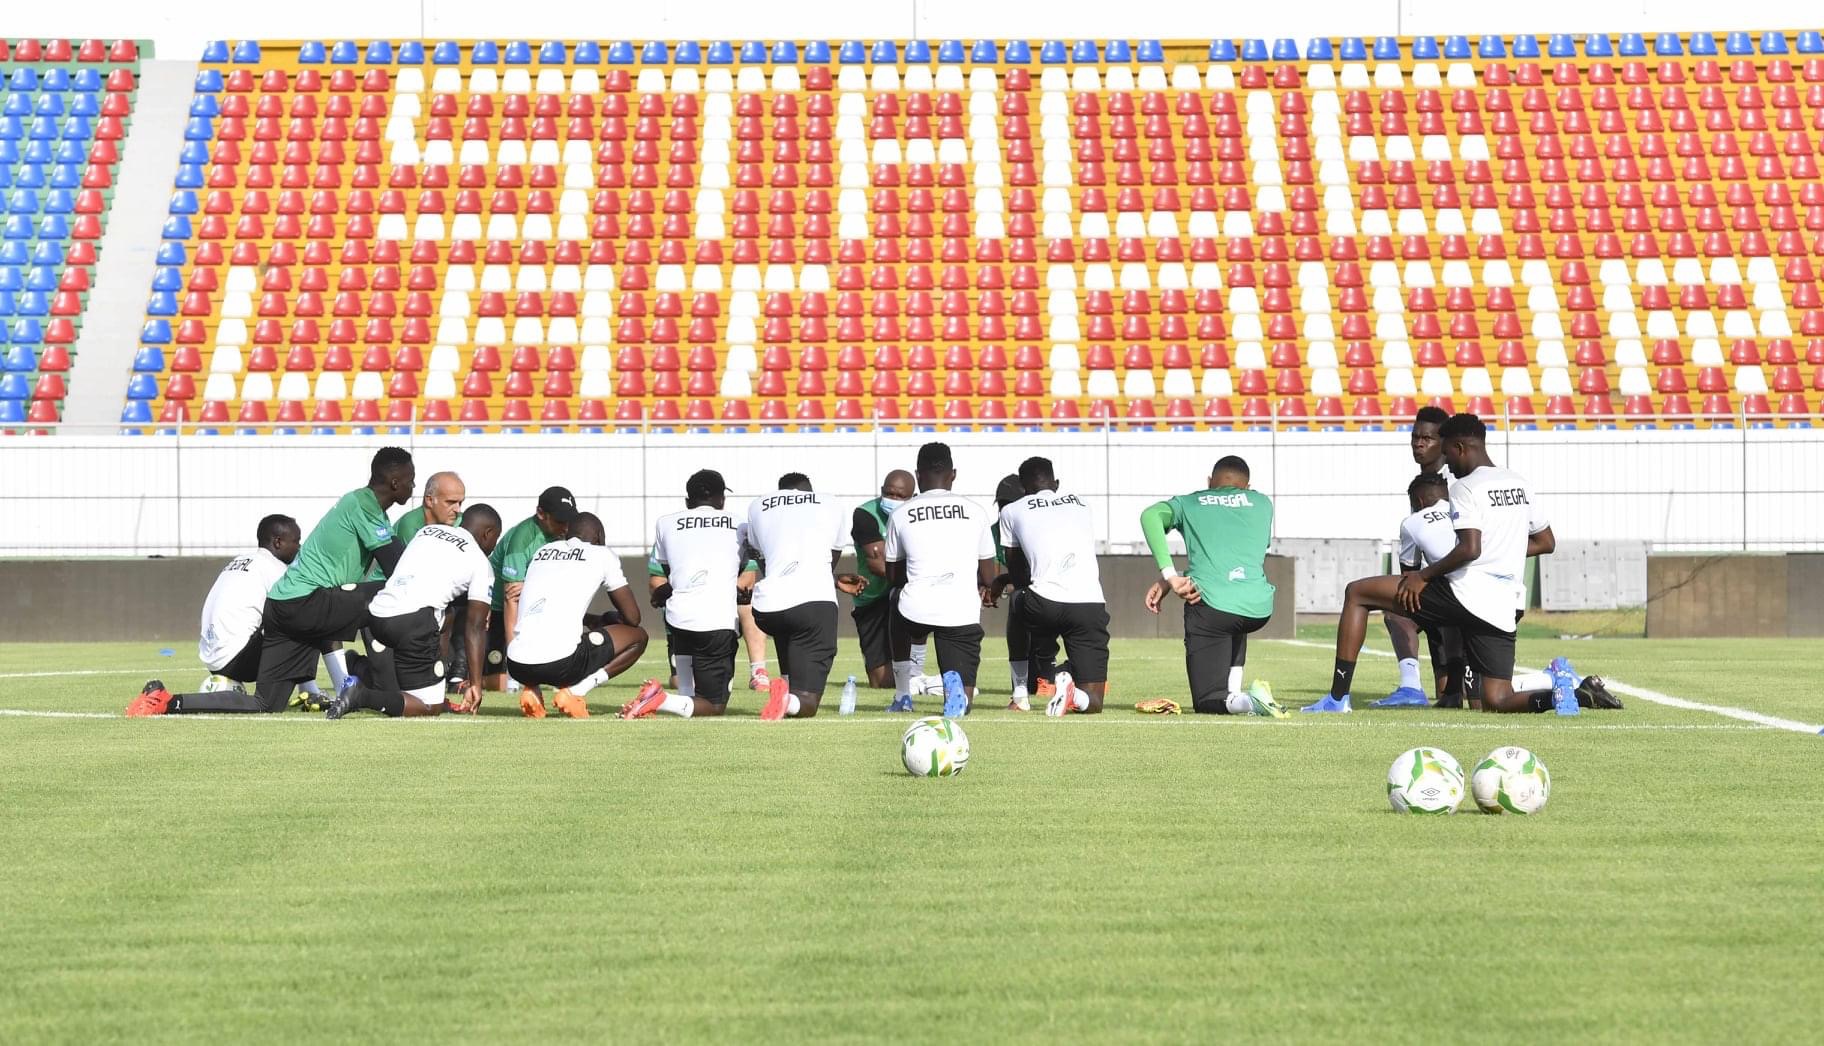 Éliminatoires mondial 2022 : Le Sénégal face à la « bête noire » Togolaise ce mercredi, pour bien démarrer sa campagne (16h00 Gmt)